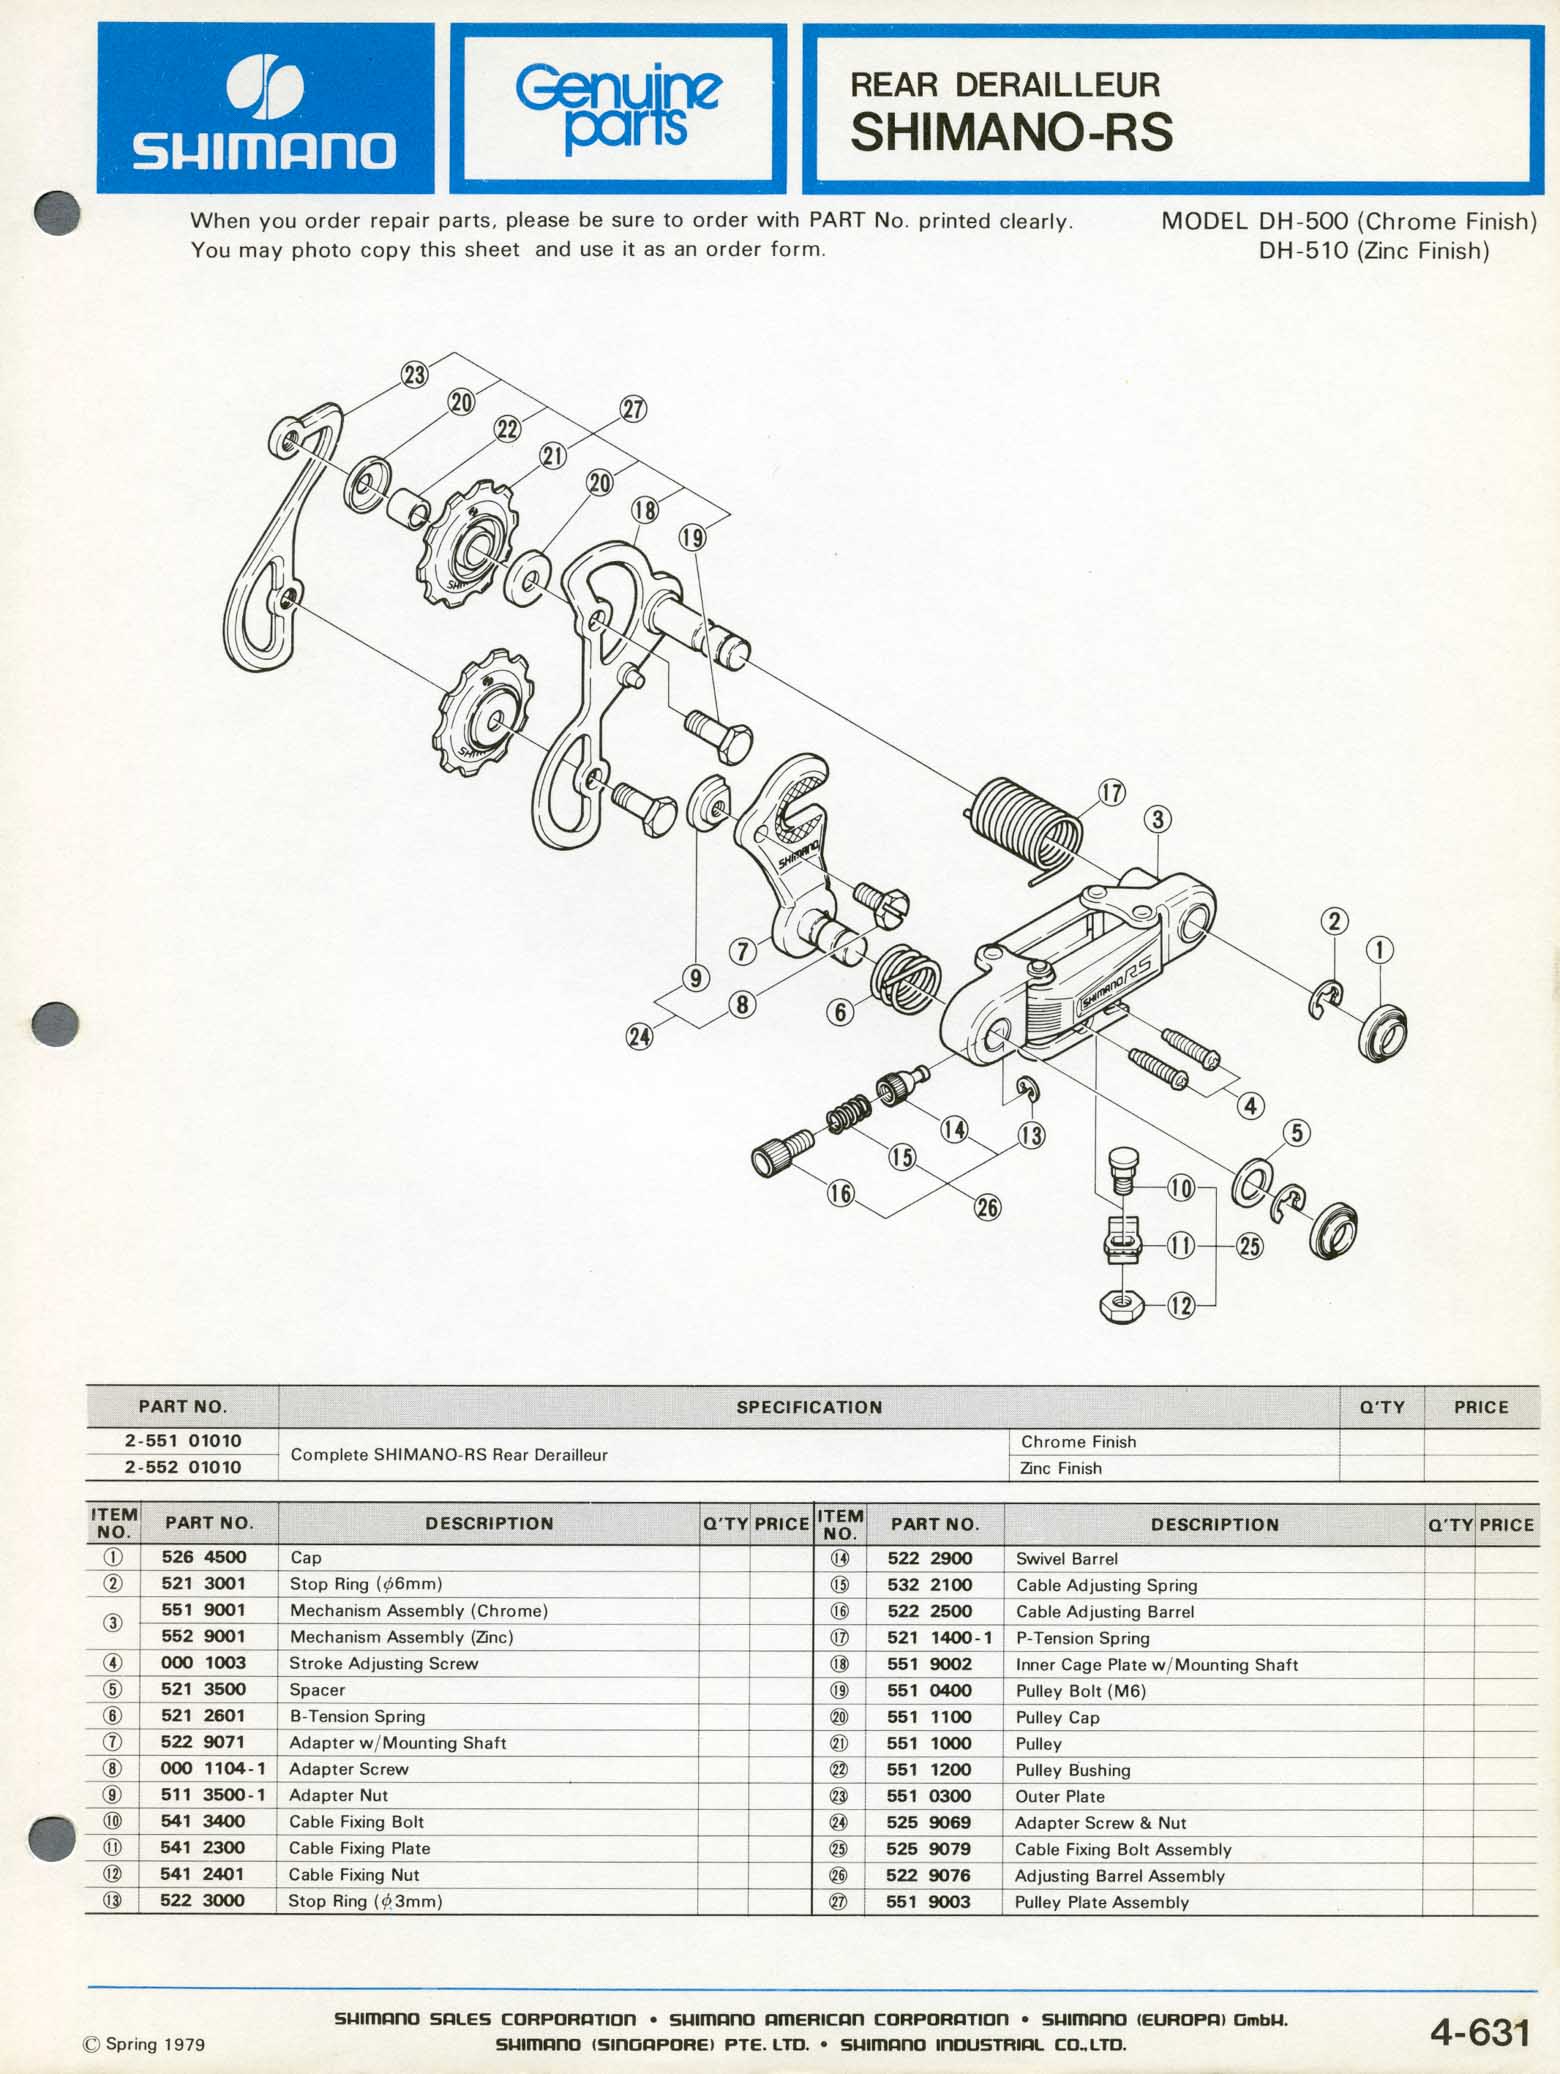 Shimano Bicycle Parts - 1979 scan 06 main image